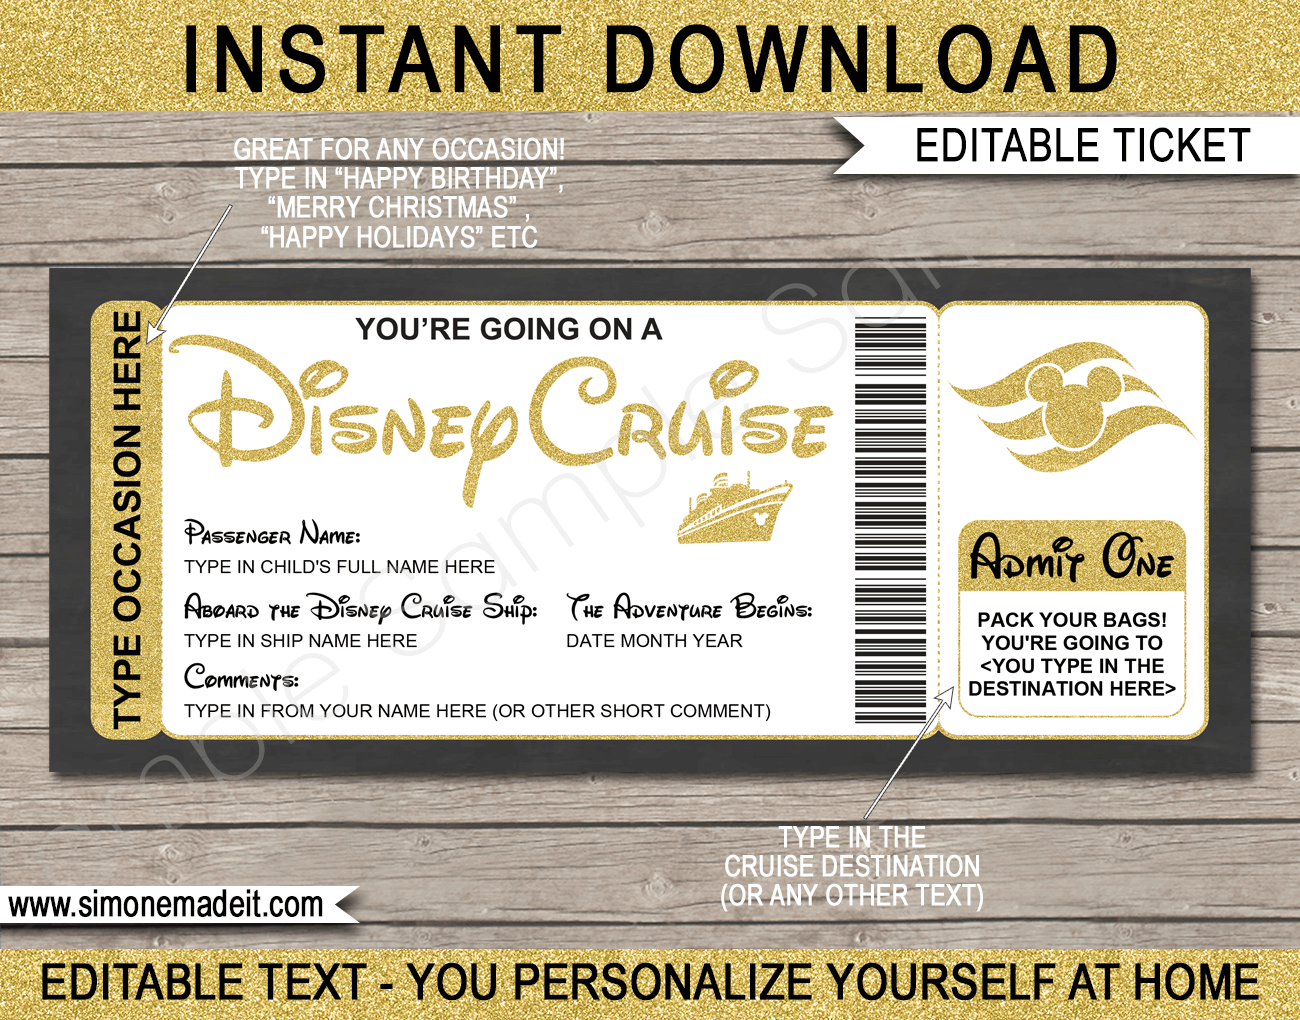 Free Printable Disney Cruise Ticket